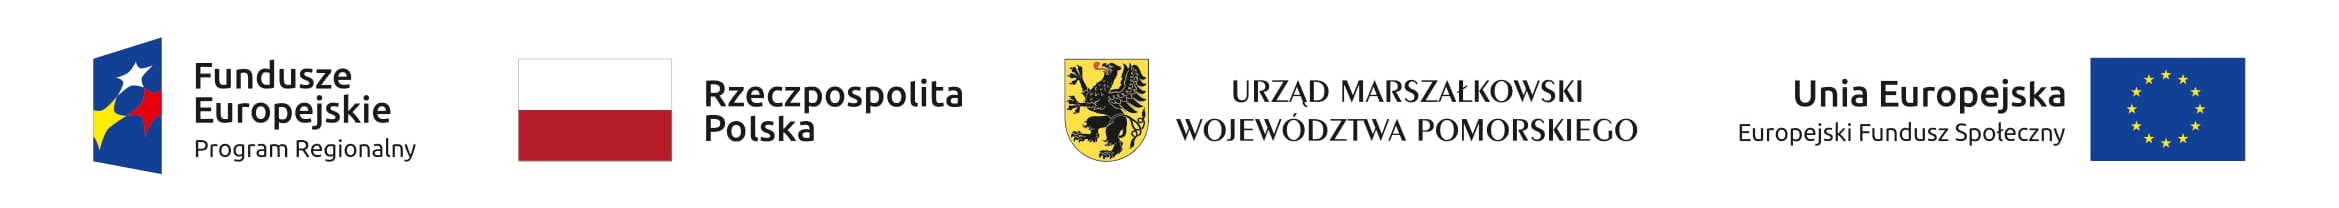 Fundusze Europejskie, RP, UMWP, UE - logotypy